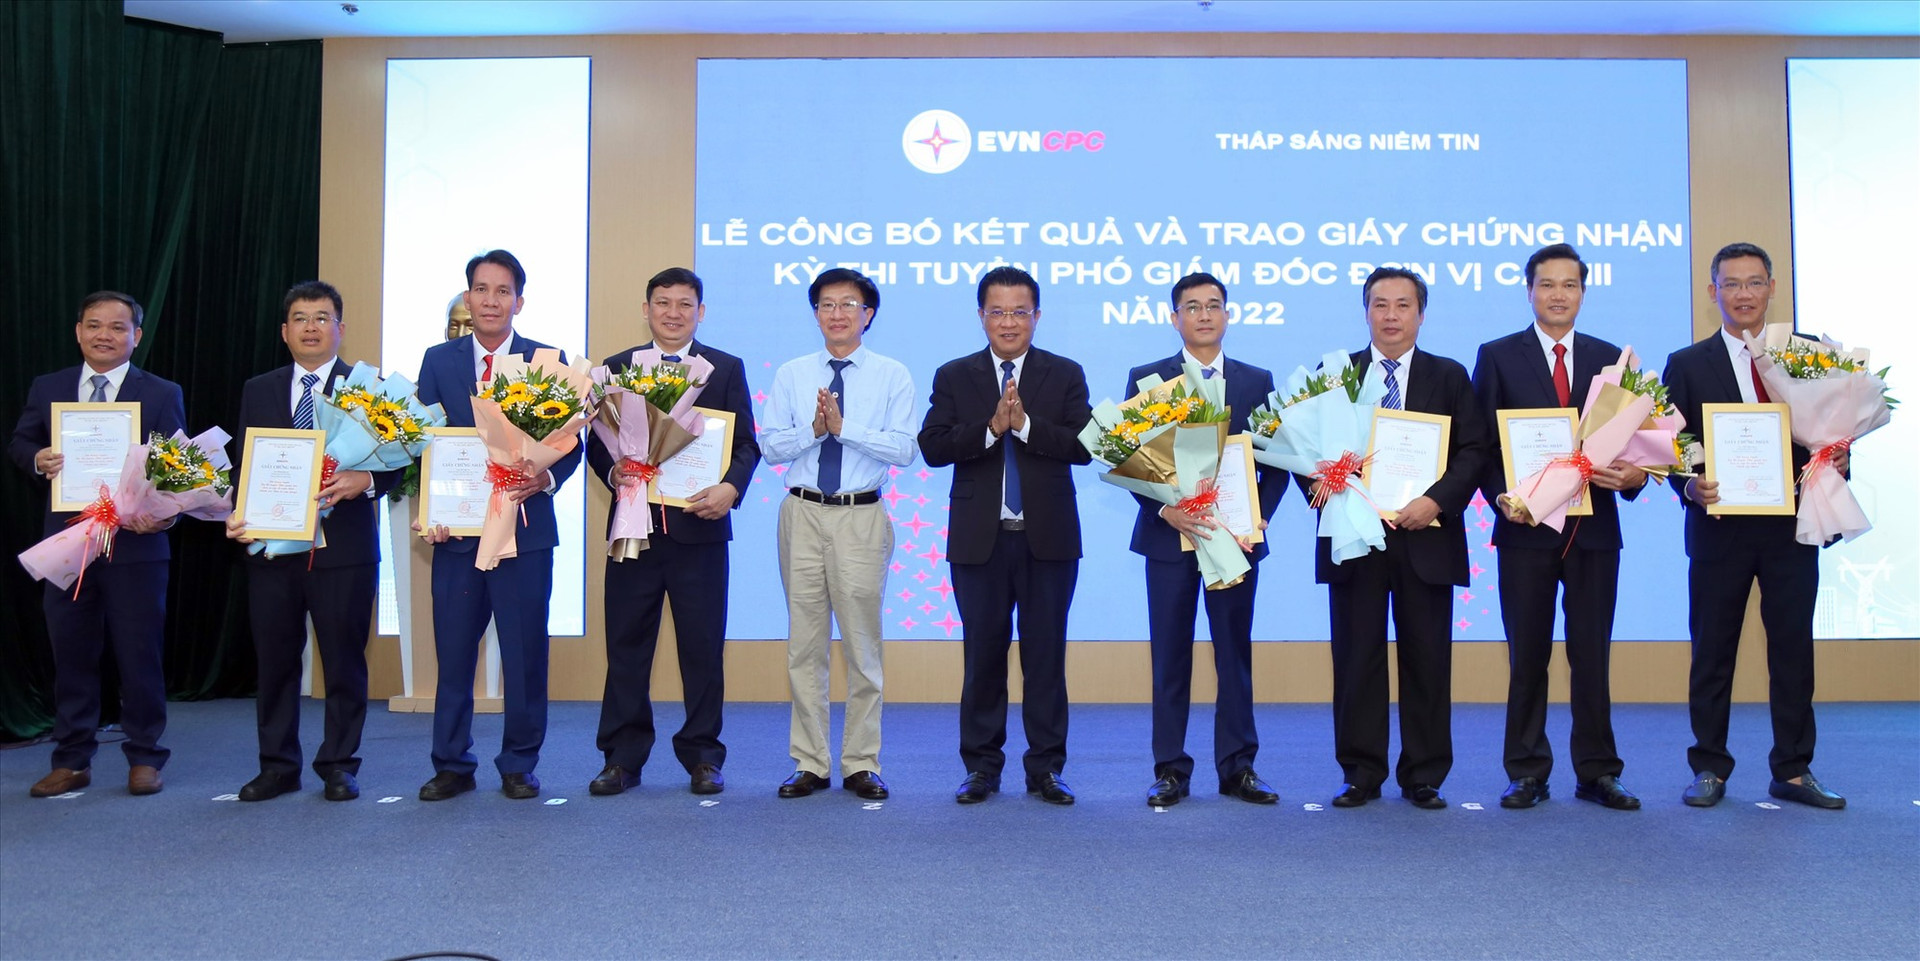 Ông Trương Thiết Hùng - Chủ tịch HĐTV và ông Ngô Tấn Cư - Thành viên HĐTV, Tổng giám đốc EVNCPC tặng hoa và trao giấy chứng nhận cho các thí sinh trúng tuyển